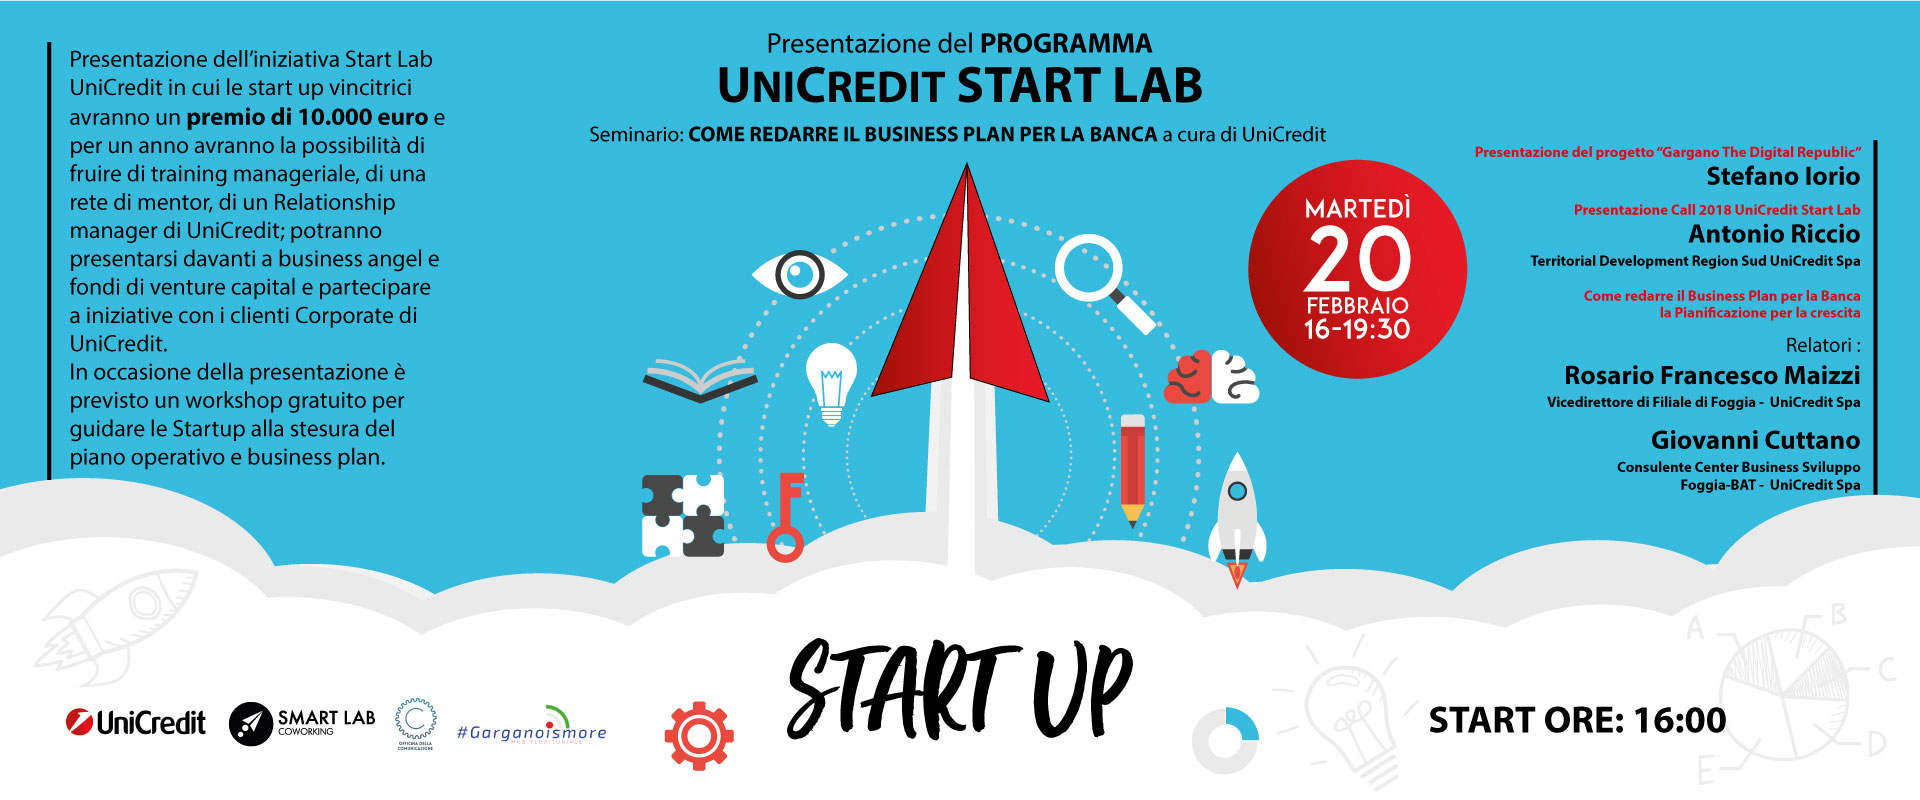 Presentazione iniziativa UniCredit Start Lab e workshop “Come creare un Business Plan”